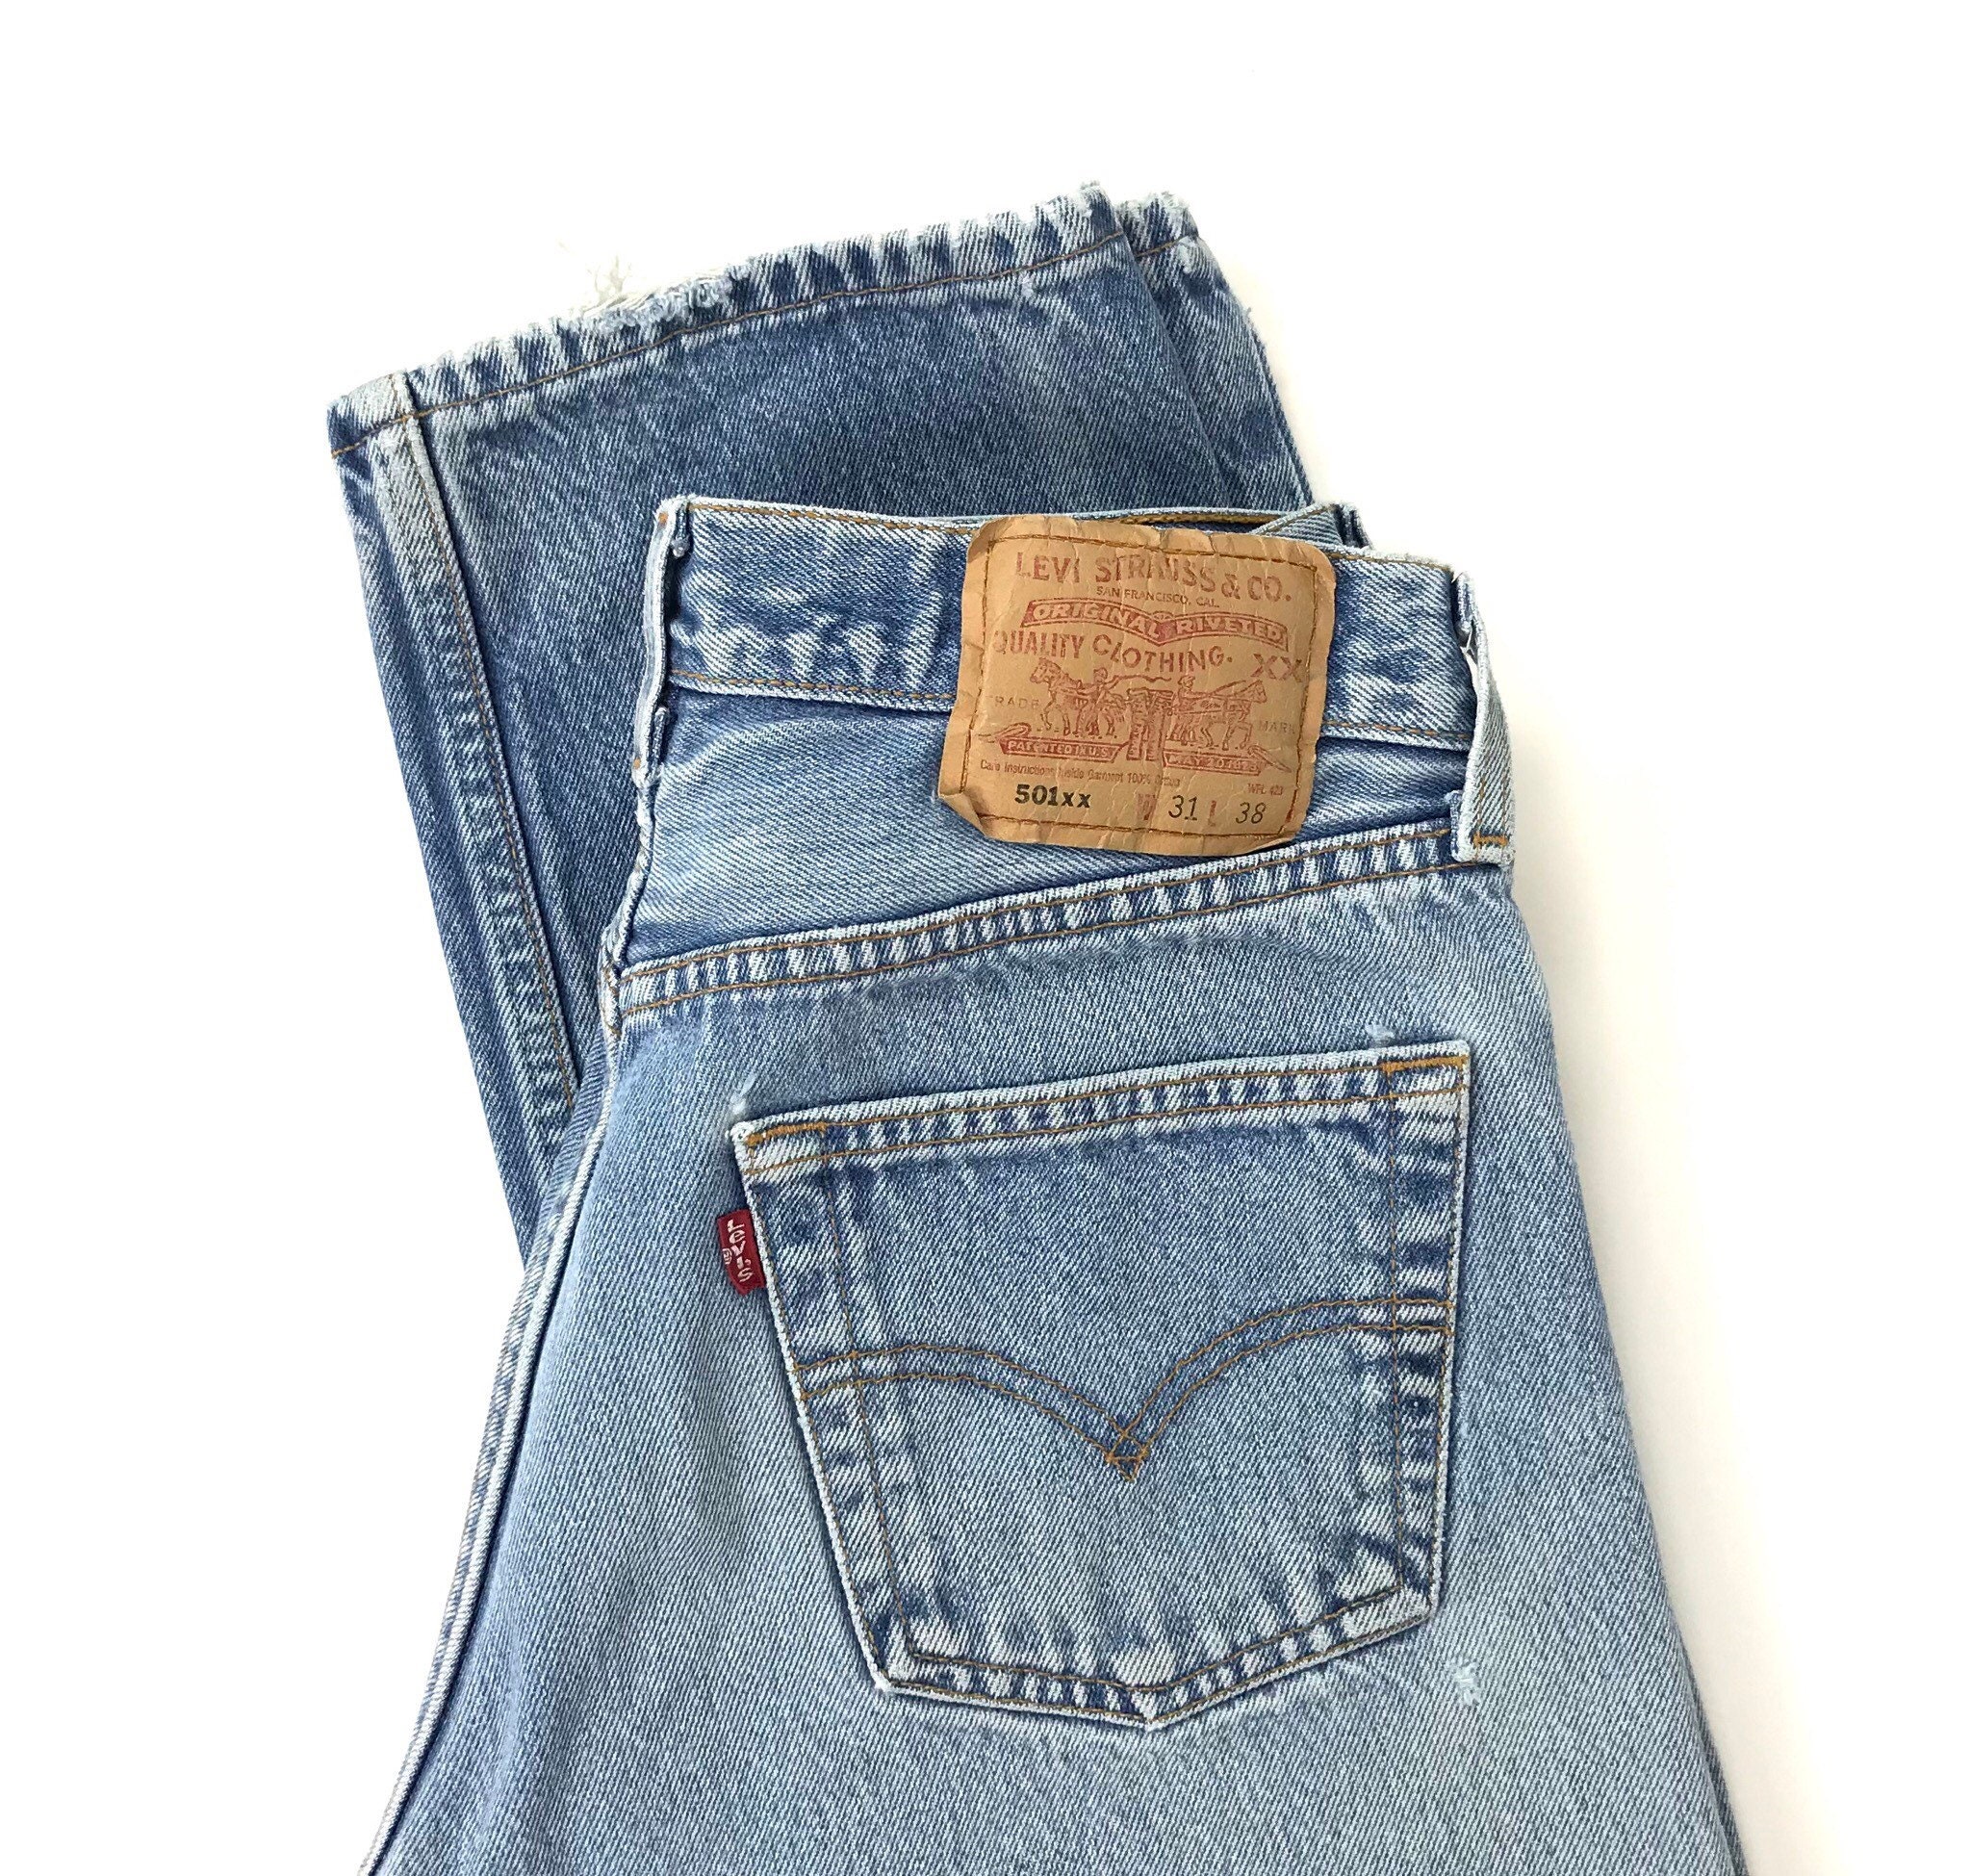 Levi's 501xx Vintage Jeans / Size 27 28